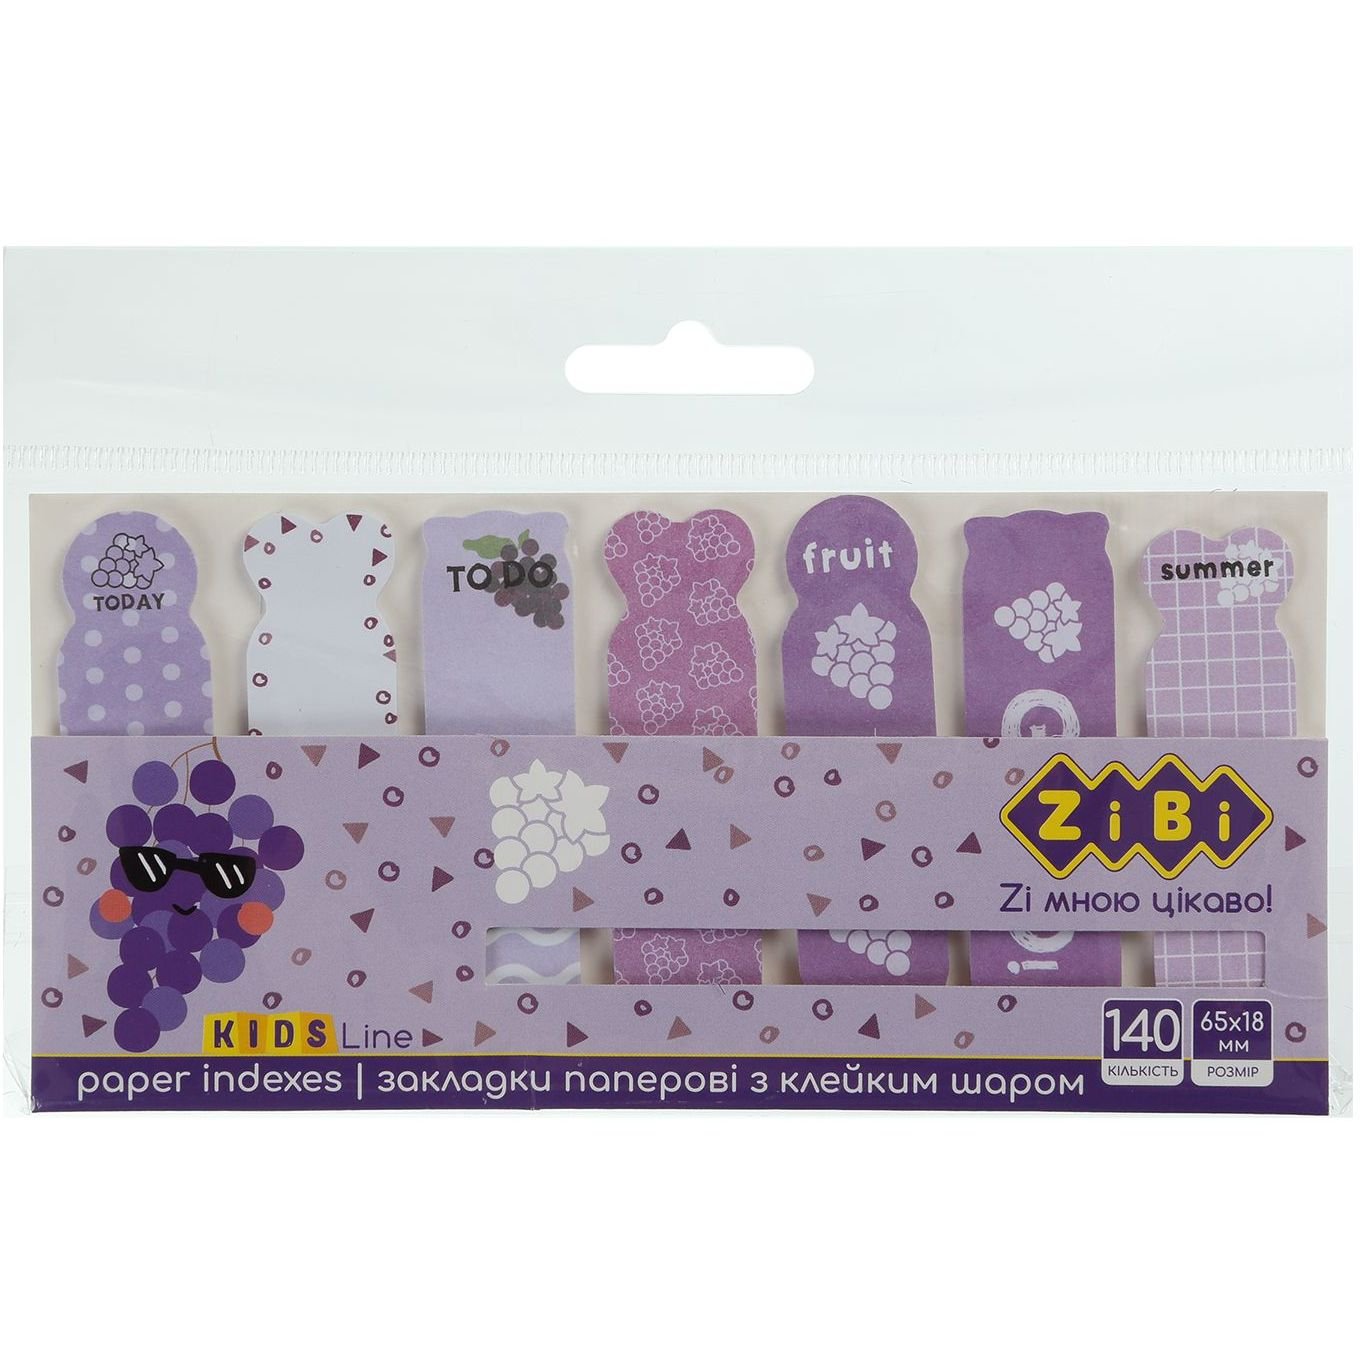 Закладки бумажные ZiBi Kids Line Grape с клейким слоем 65x18 мм 140 шт. (ZB.15102) - фото 1